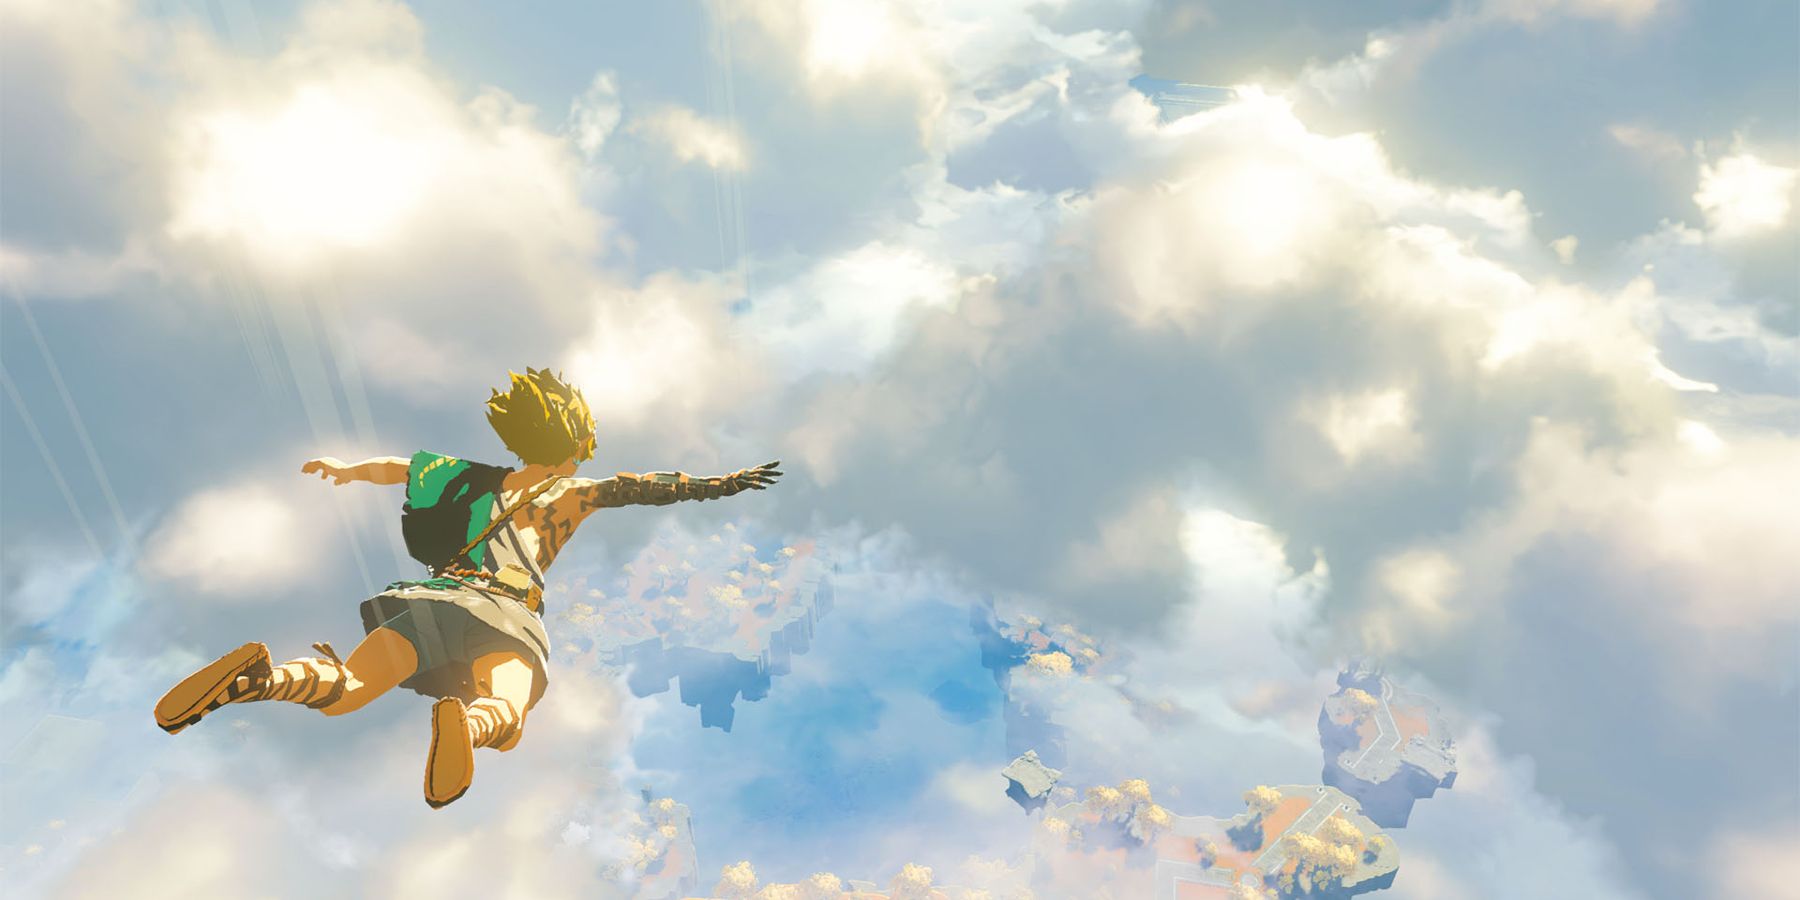 Zelda: Breath of the Wild 2 offizieller Name enthüllt Berichten zufolge bei Next Nintendo Direct erwartet